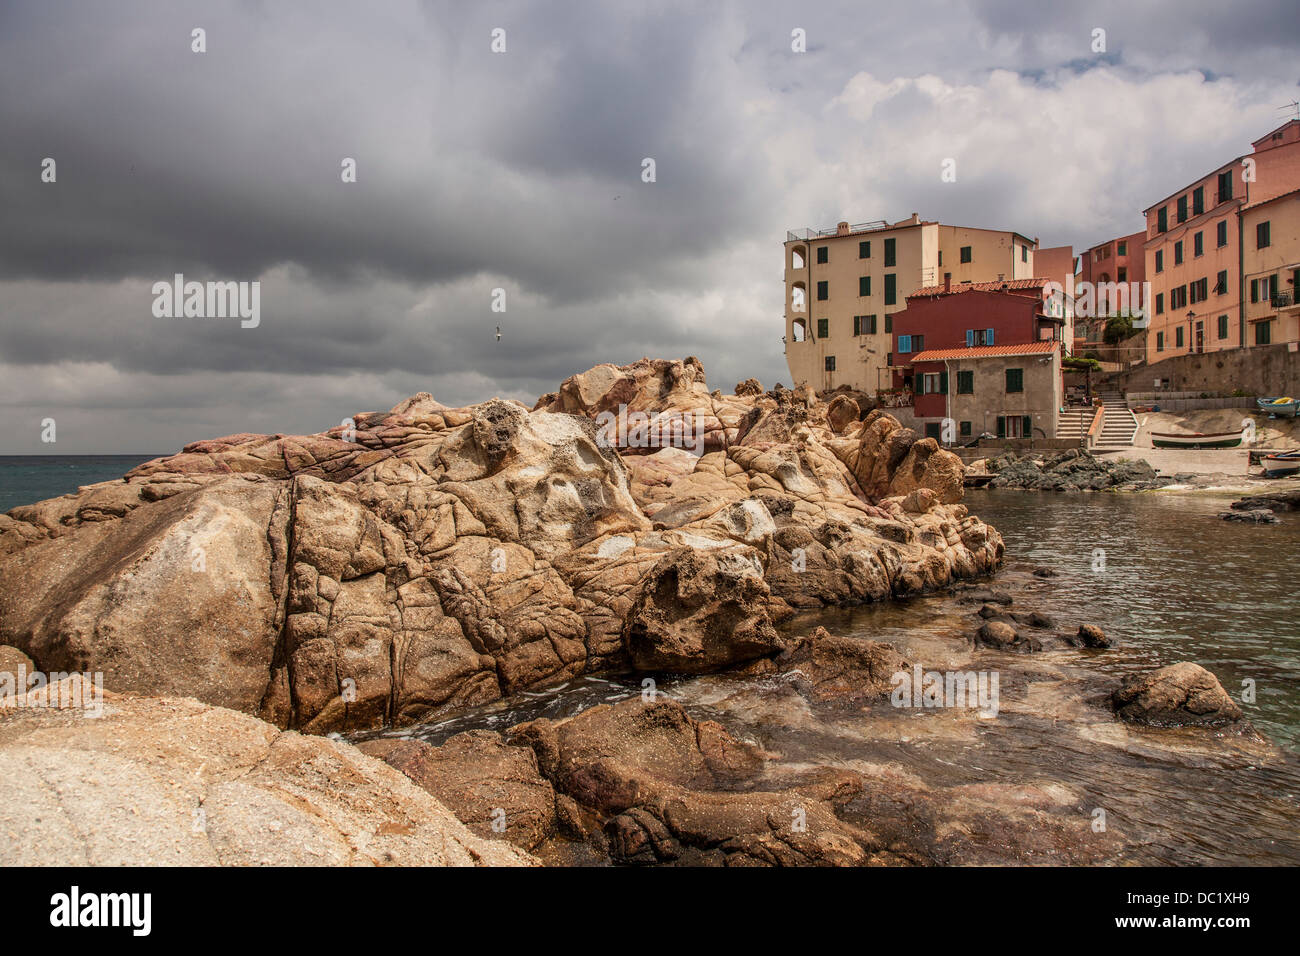 Rocks and houses Marciana town, Elba Island, Italy Stock Photo